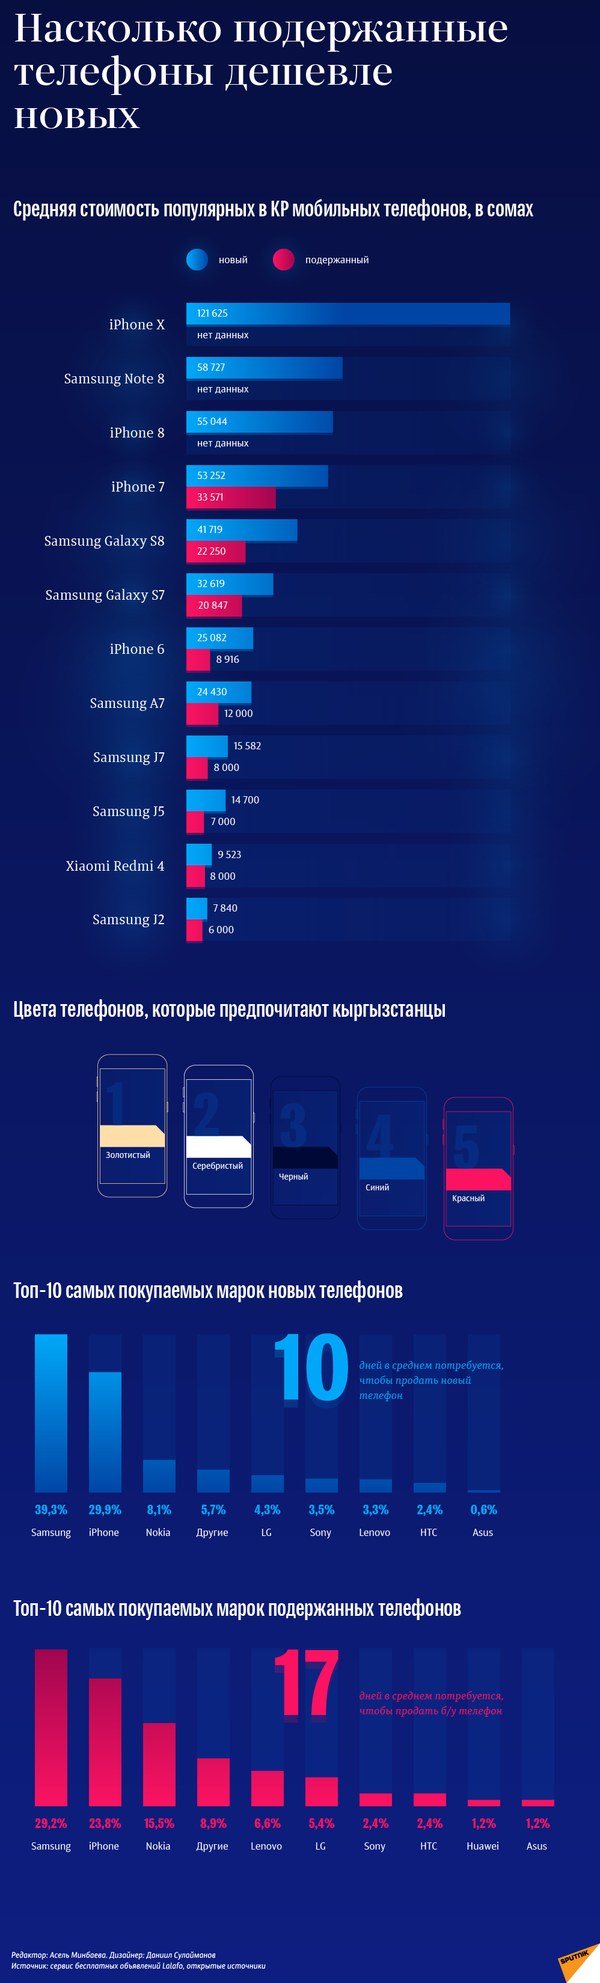 Насколько подержанные телефоны дешевле новых — кыргызстанская статистика - Sputnik Кыргызстан